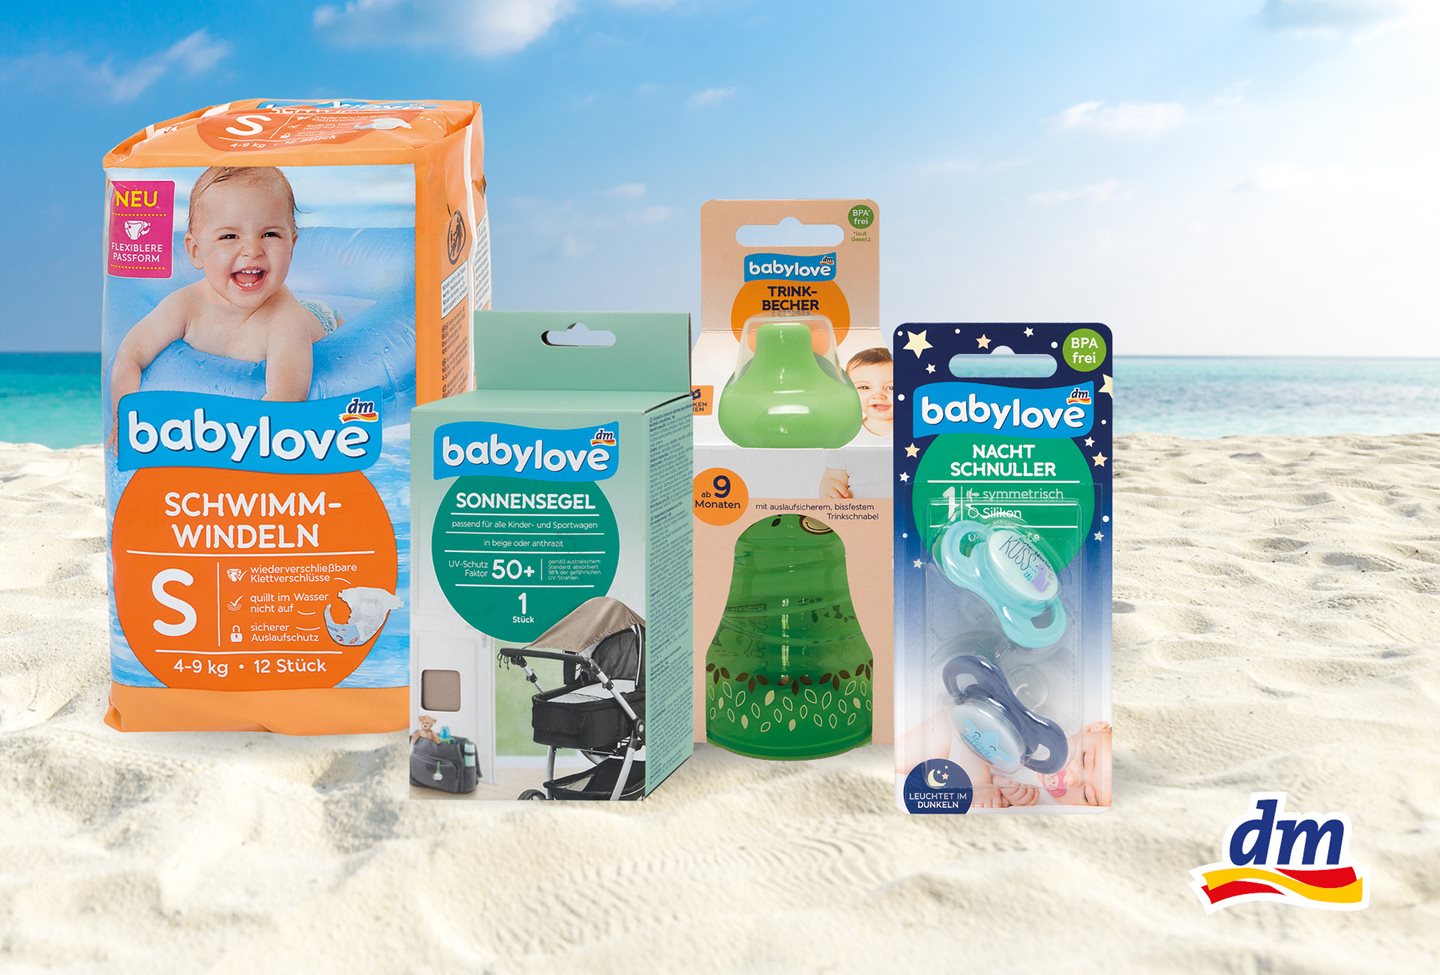 Koji će vam proizvodi zaista trebati na plaži s bebom?